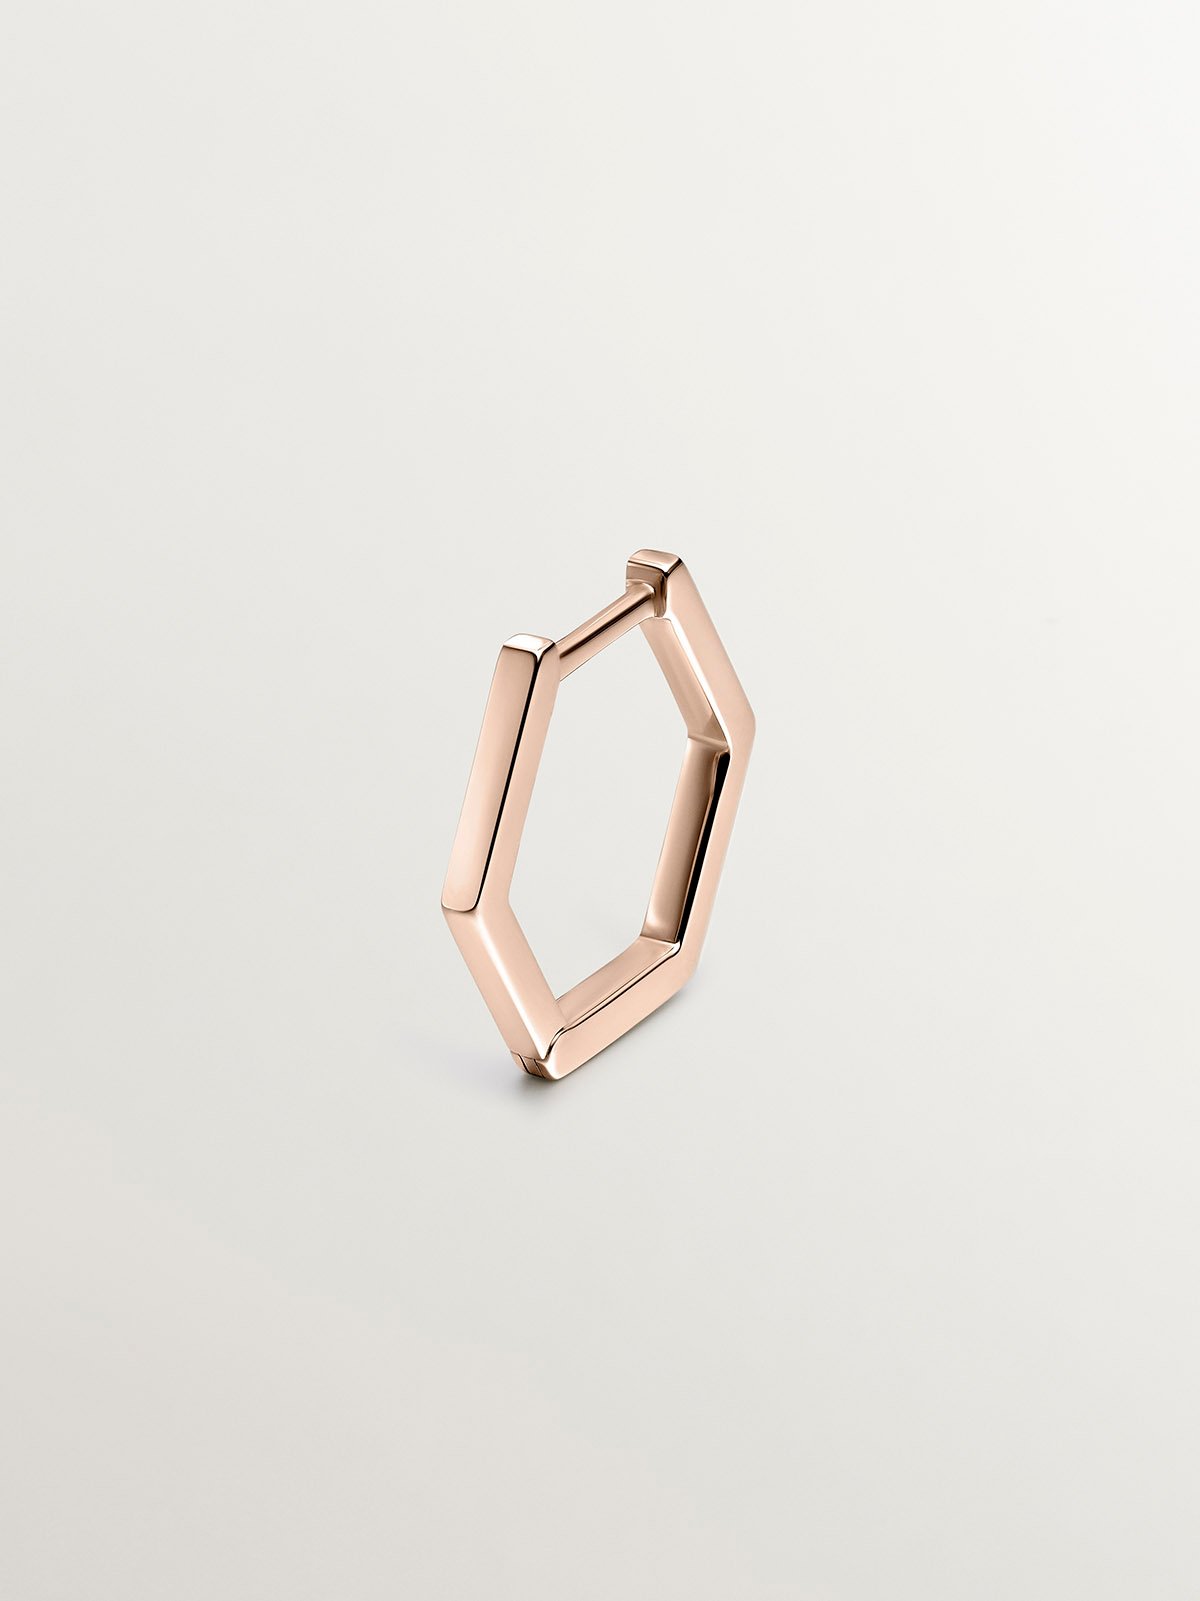 Pendiente individual de aro de oro rosa de 9K con forma hexagonal